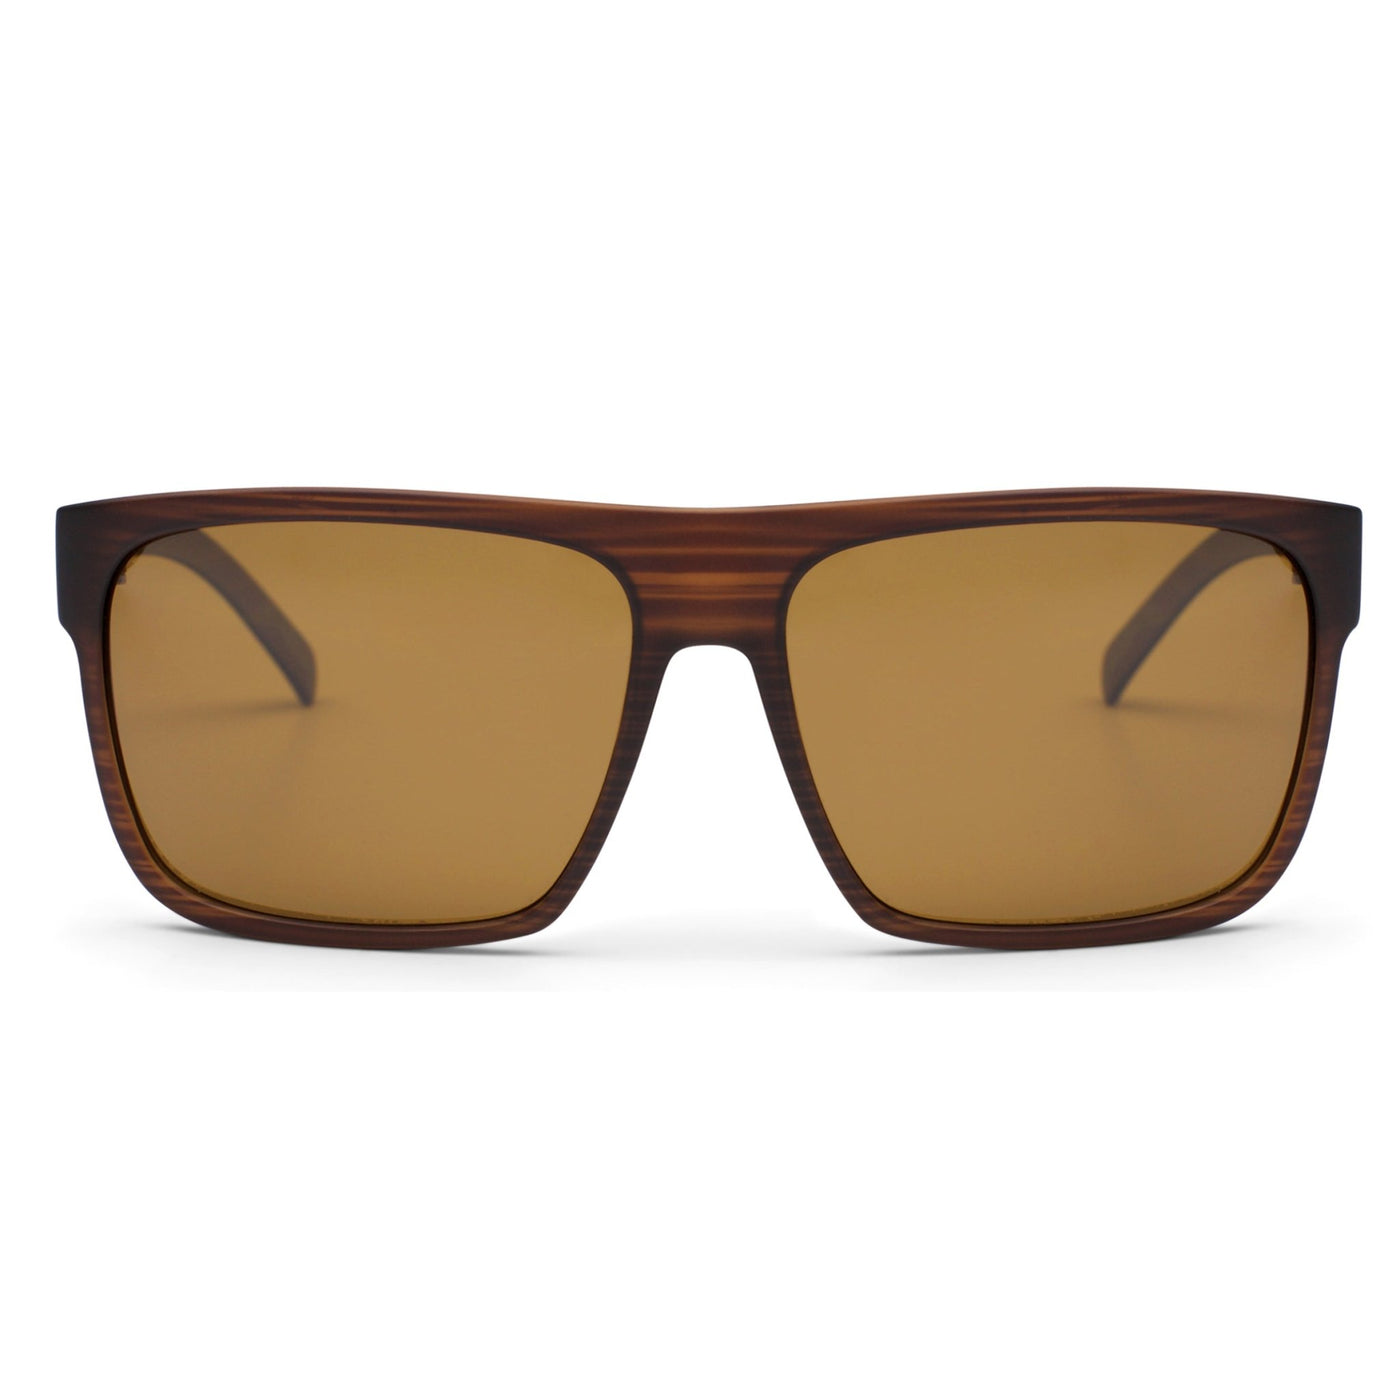 Brown OTIS sunglasses facing forward